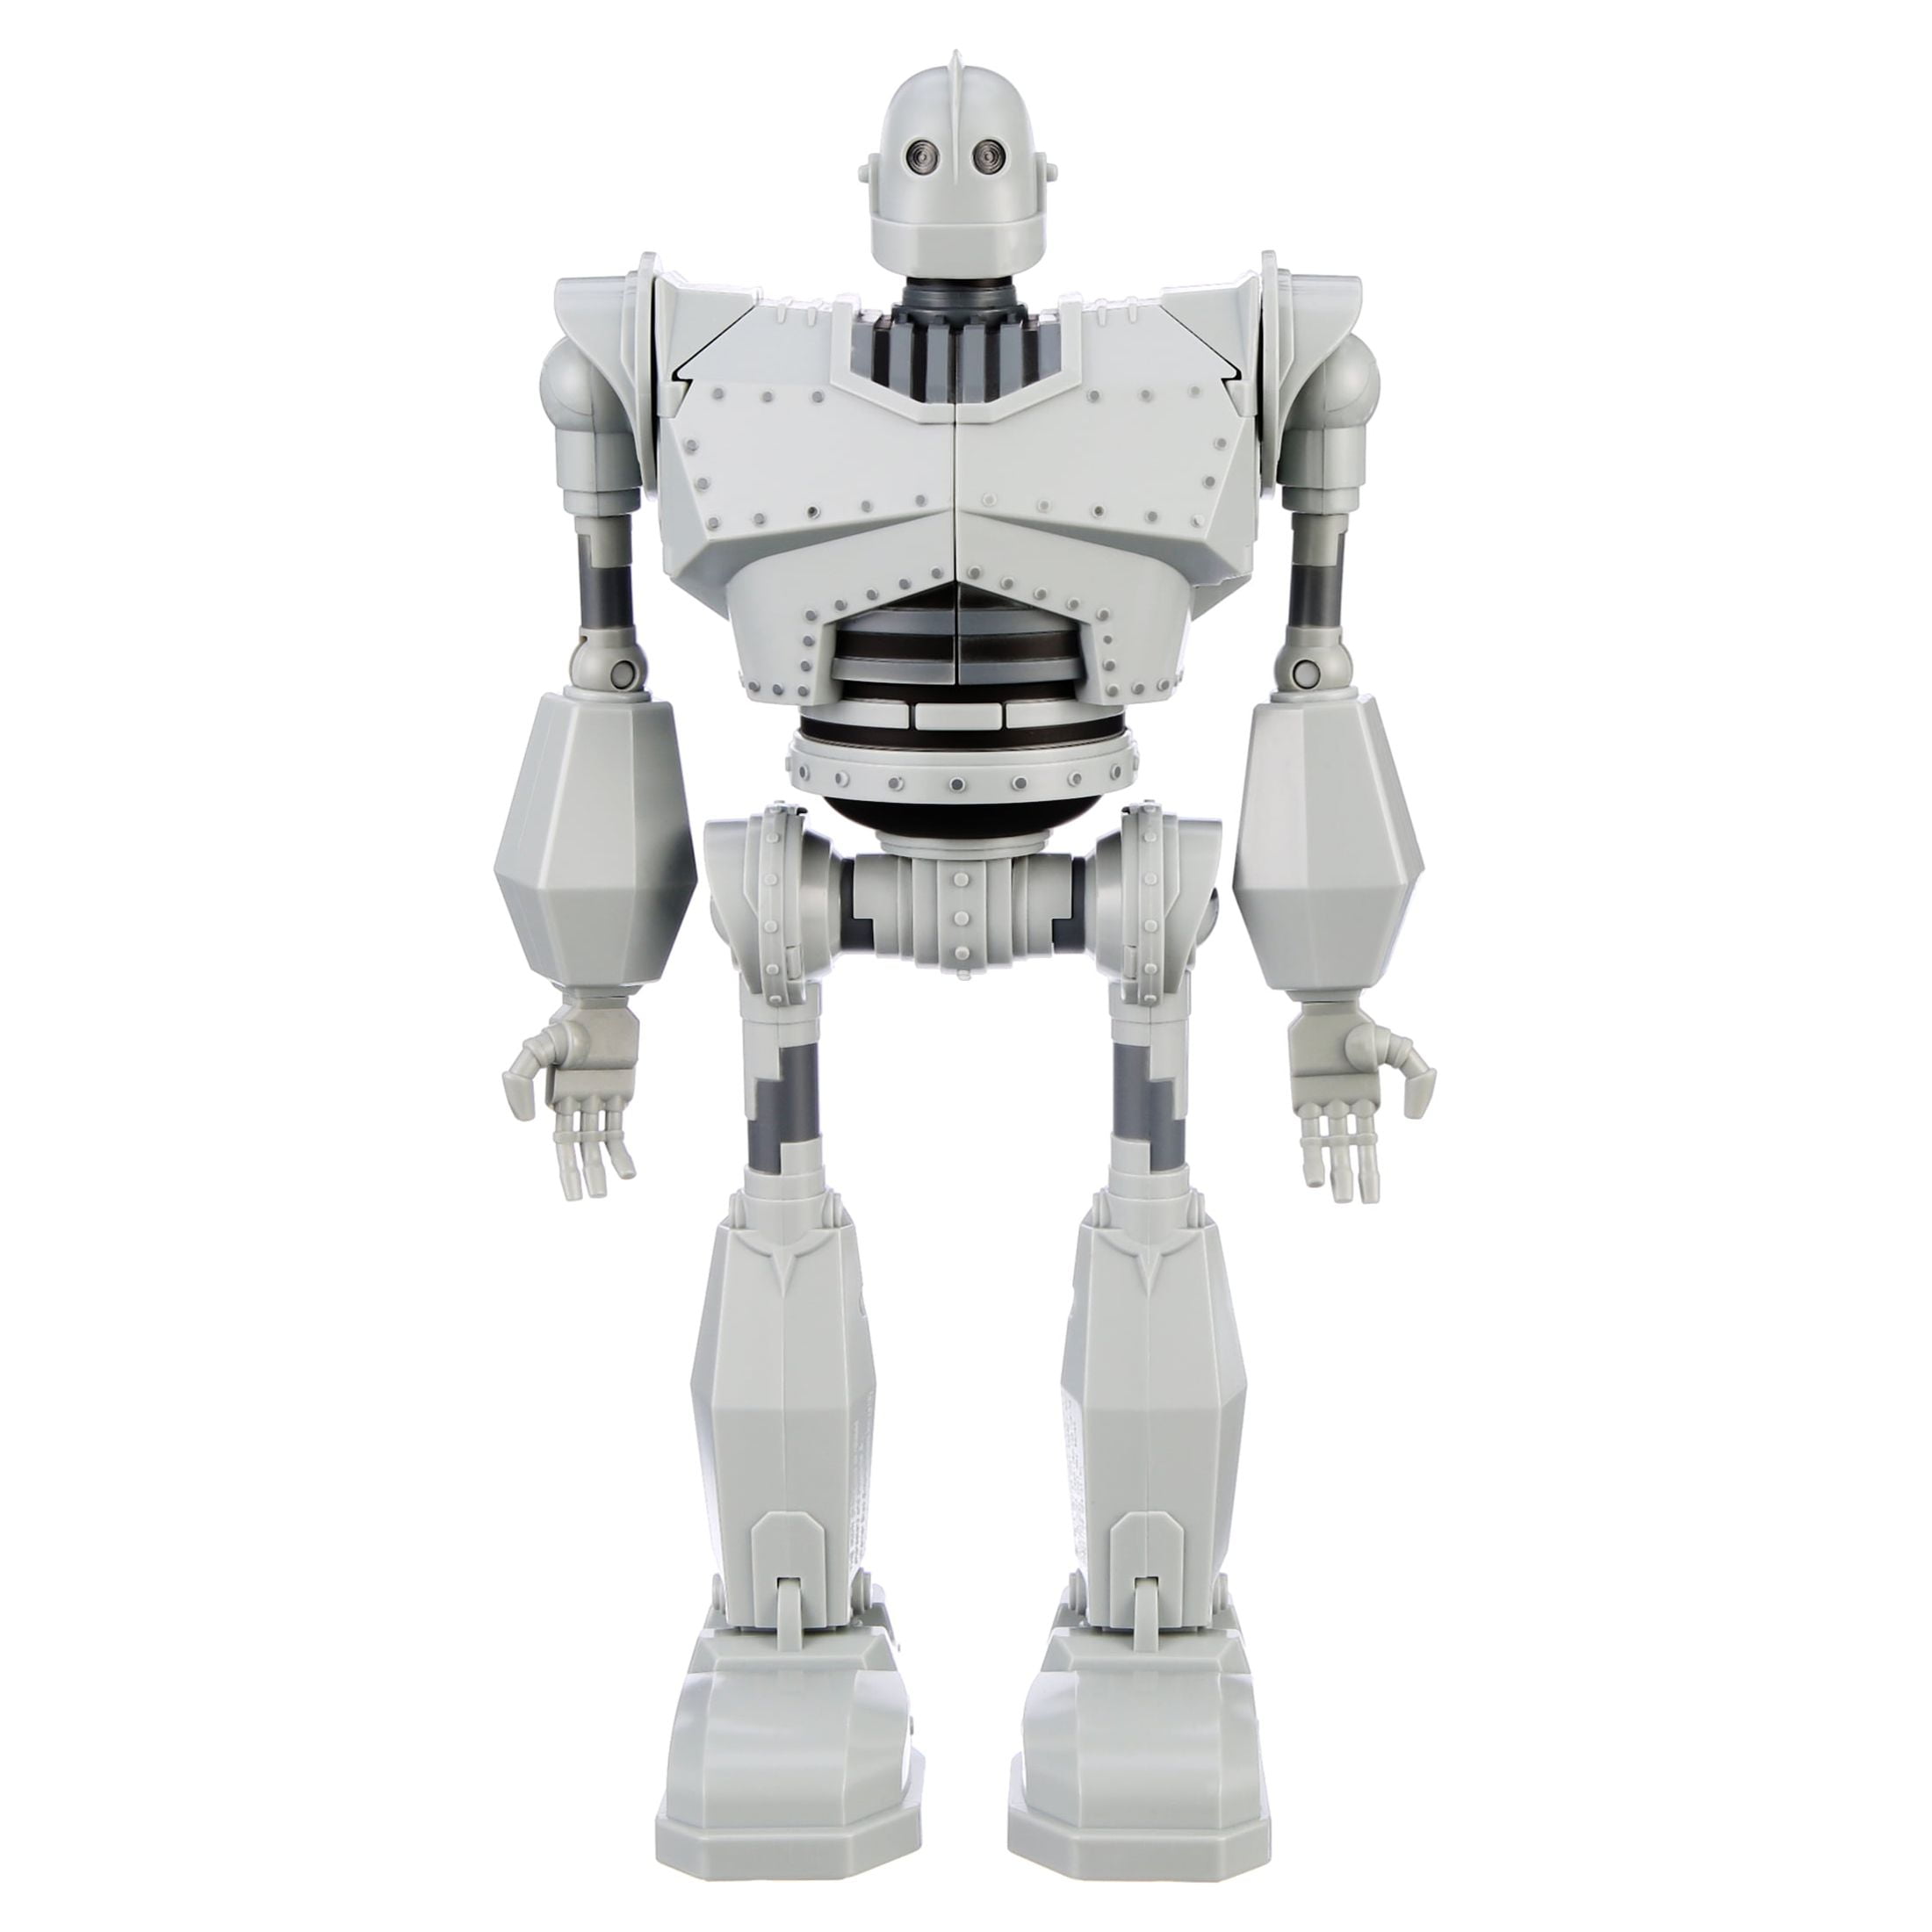 The Iron Giant Light & Sound Walking Robot Toy, 15